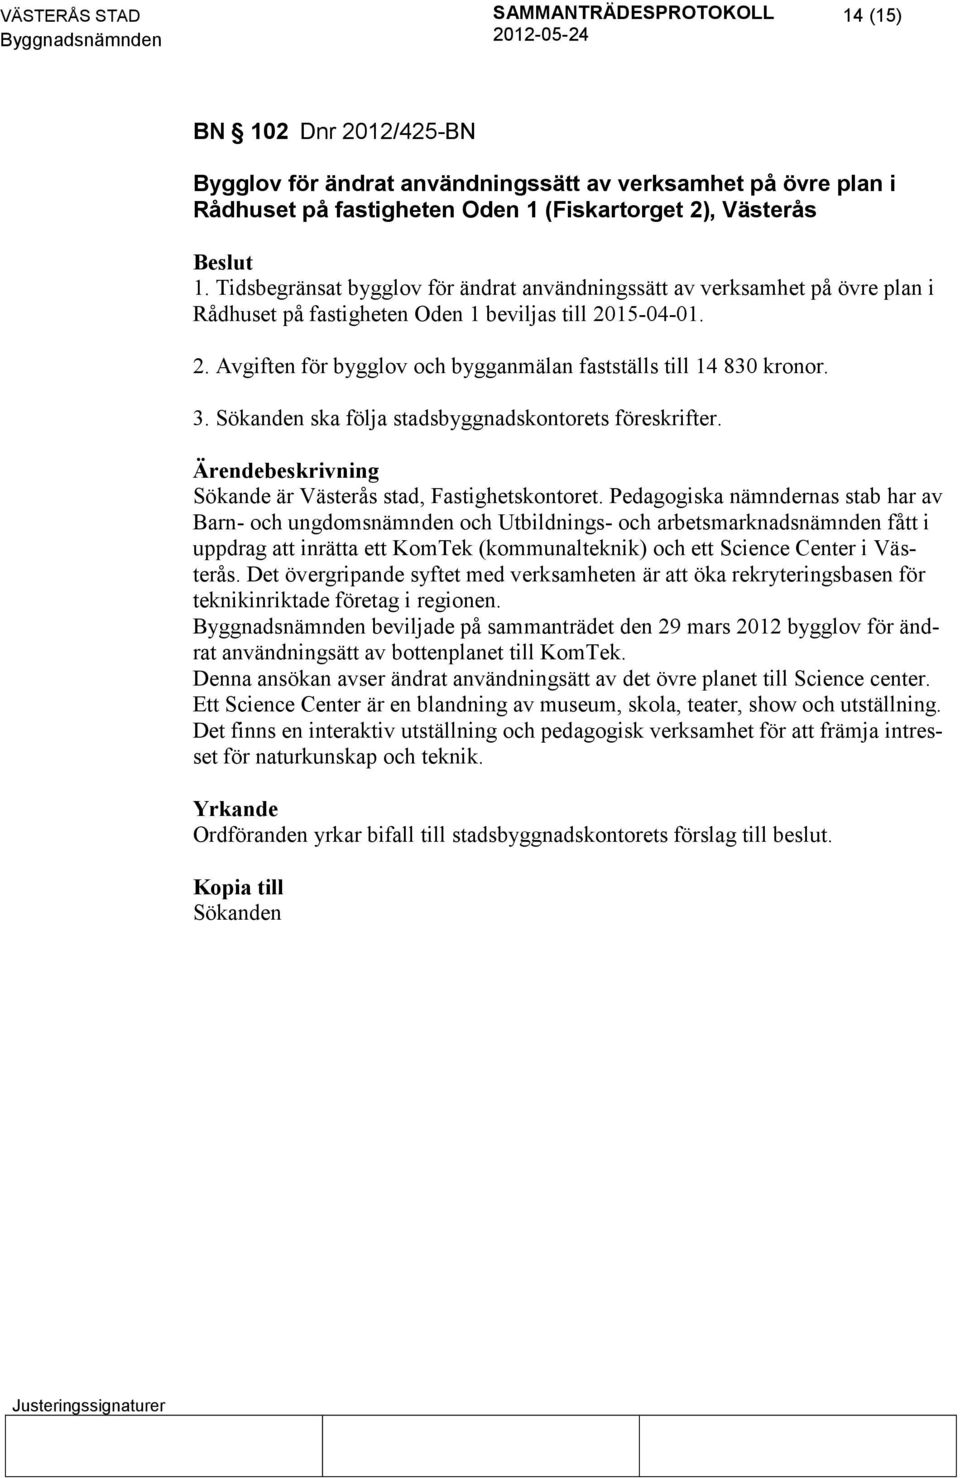 3. Sökanden ska följa stadsbyggnadskontorets föreskrifter. Sökande är Västerås stad, Fastighetskontoret.